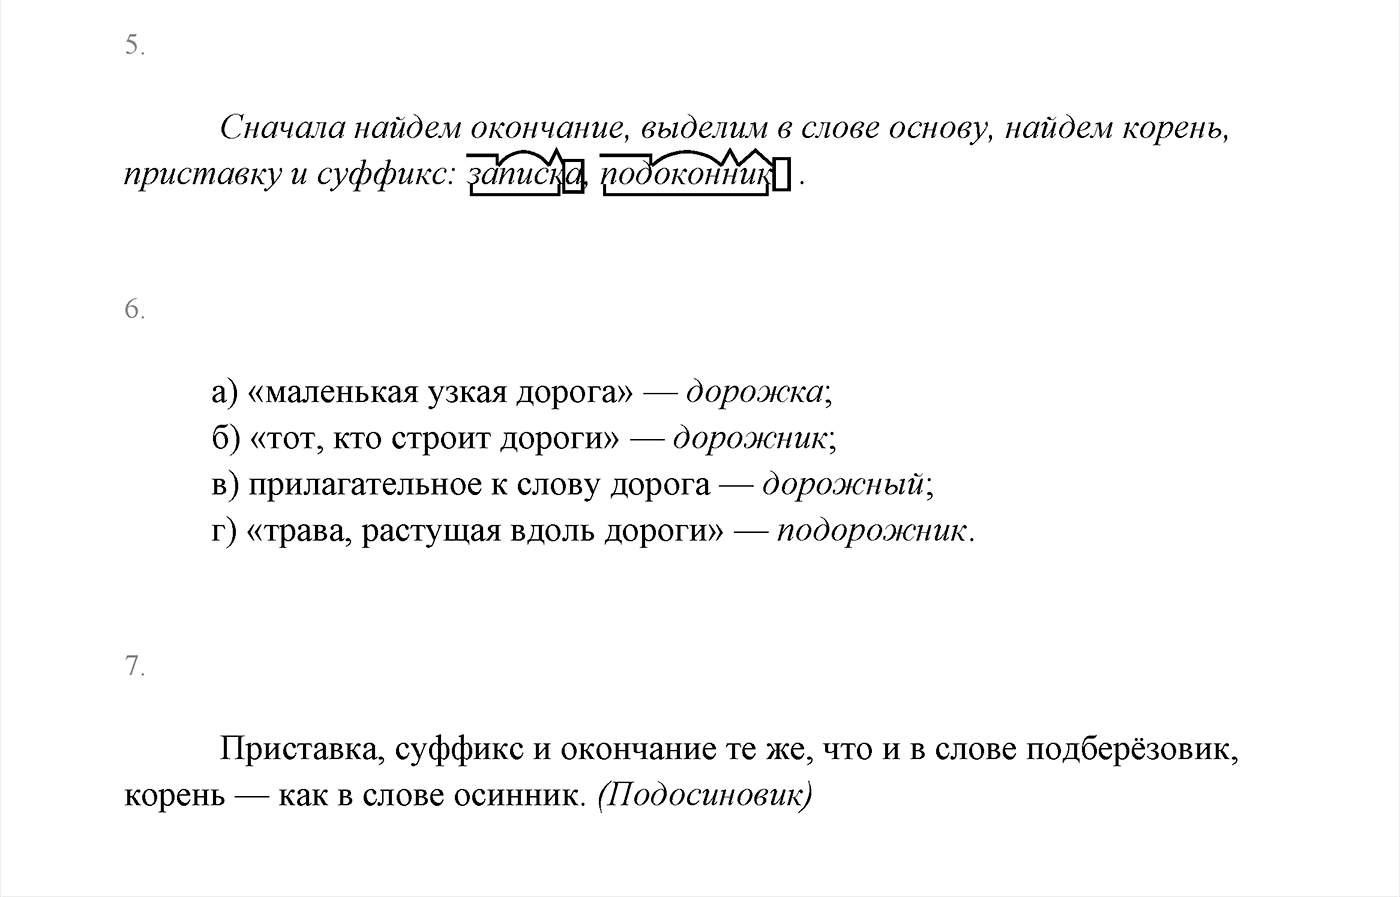 Русский язык стр 44 проверь себя. Проверь себя русский язык 3 класс.